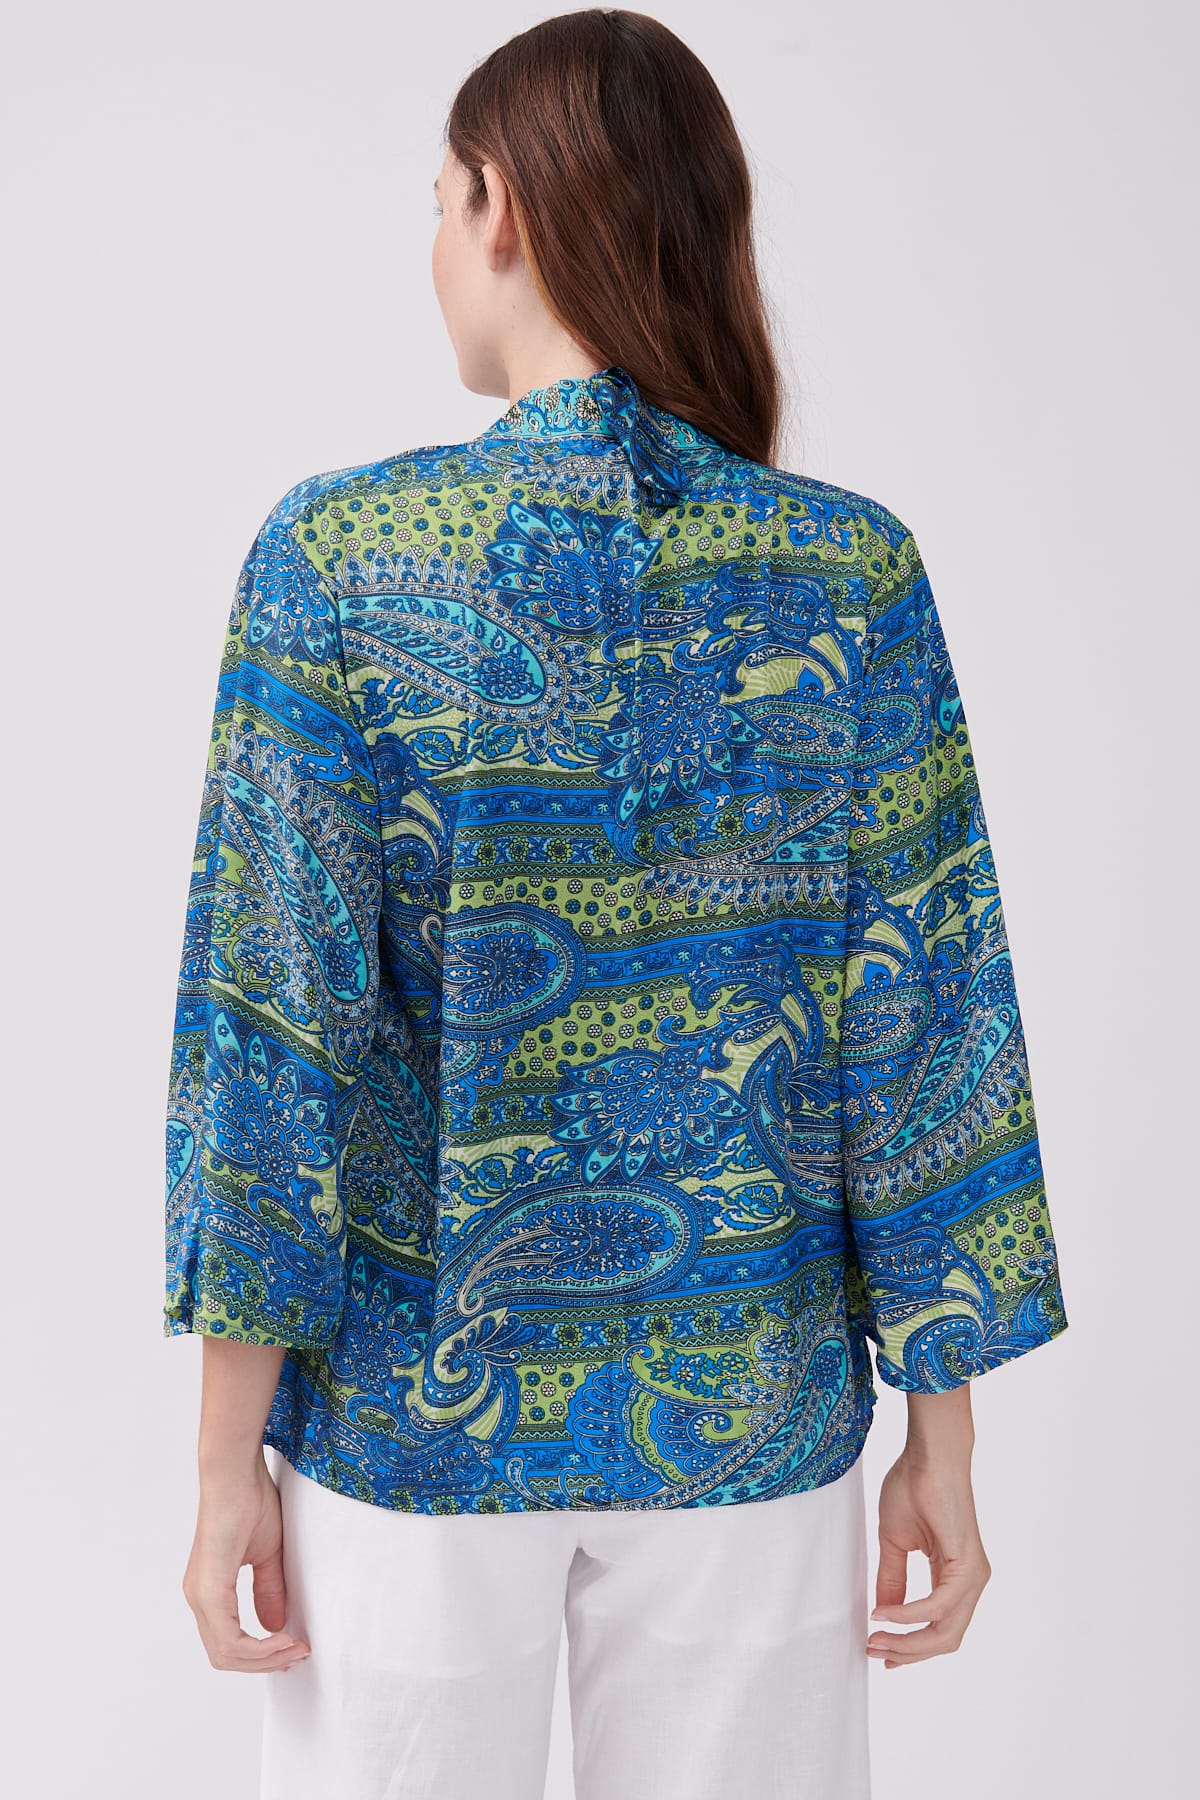 Derhy Yannette Paisley Print Kimono Top